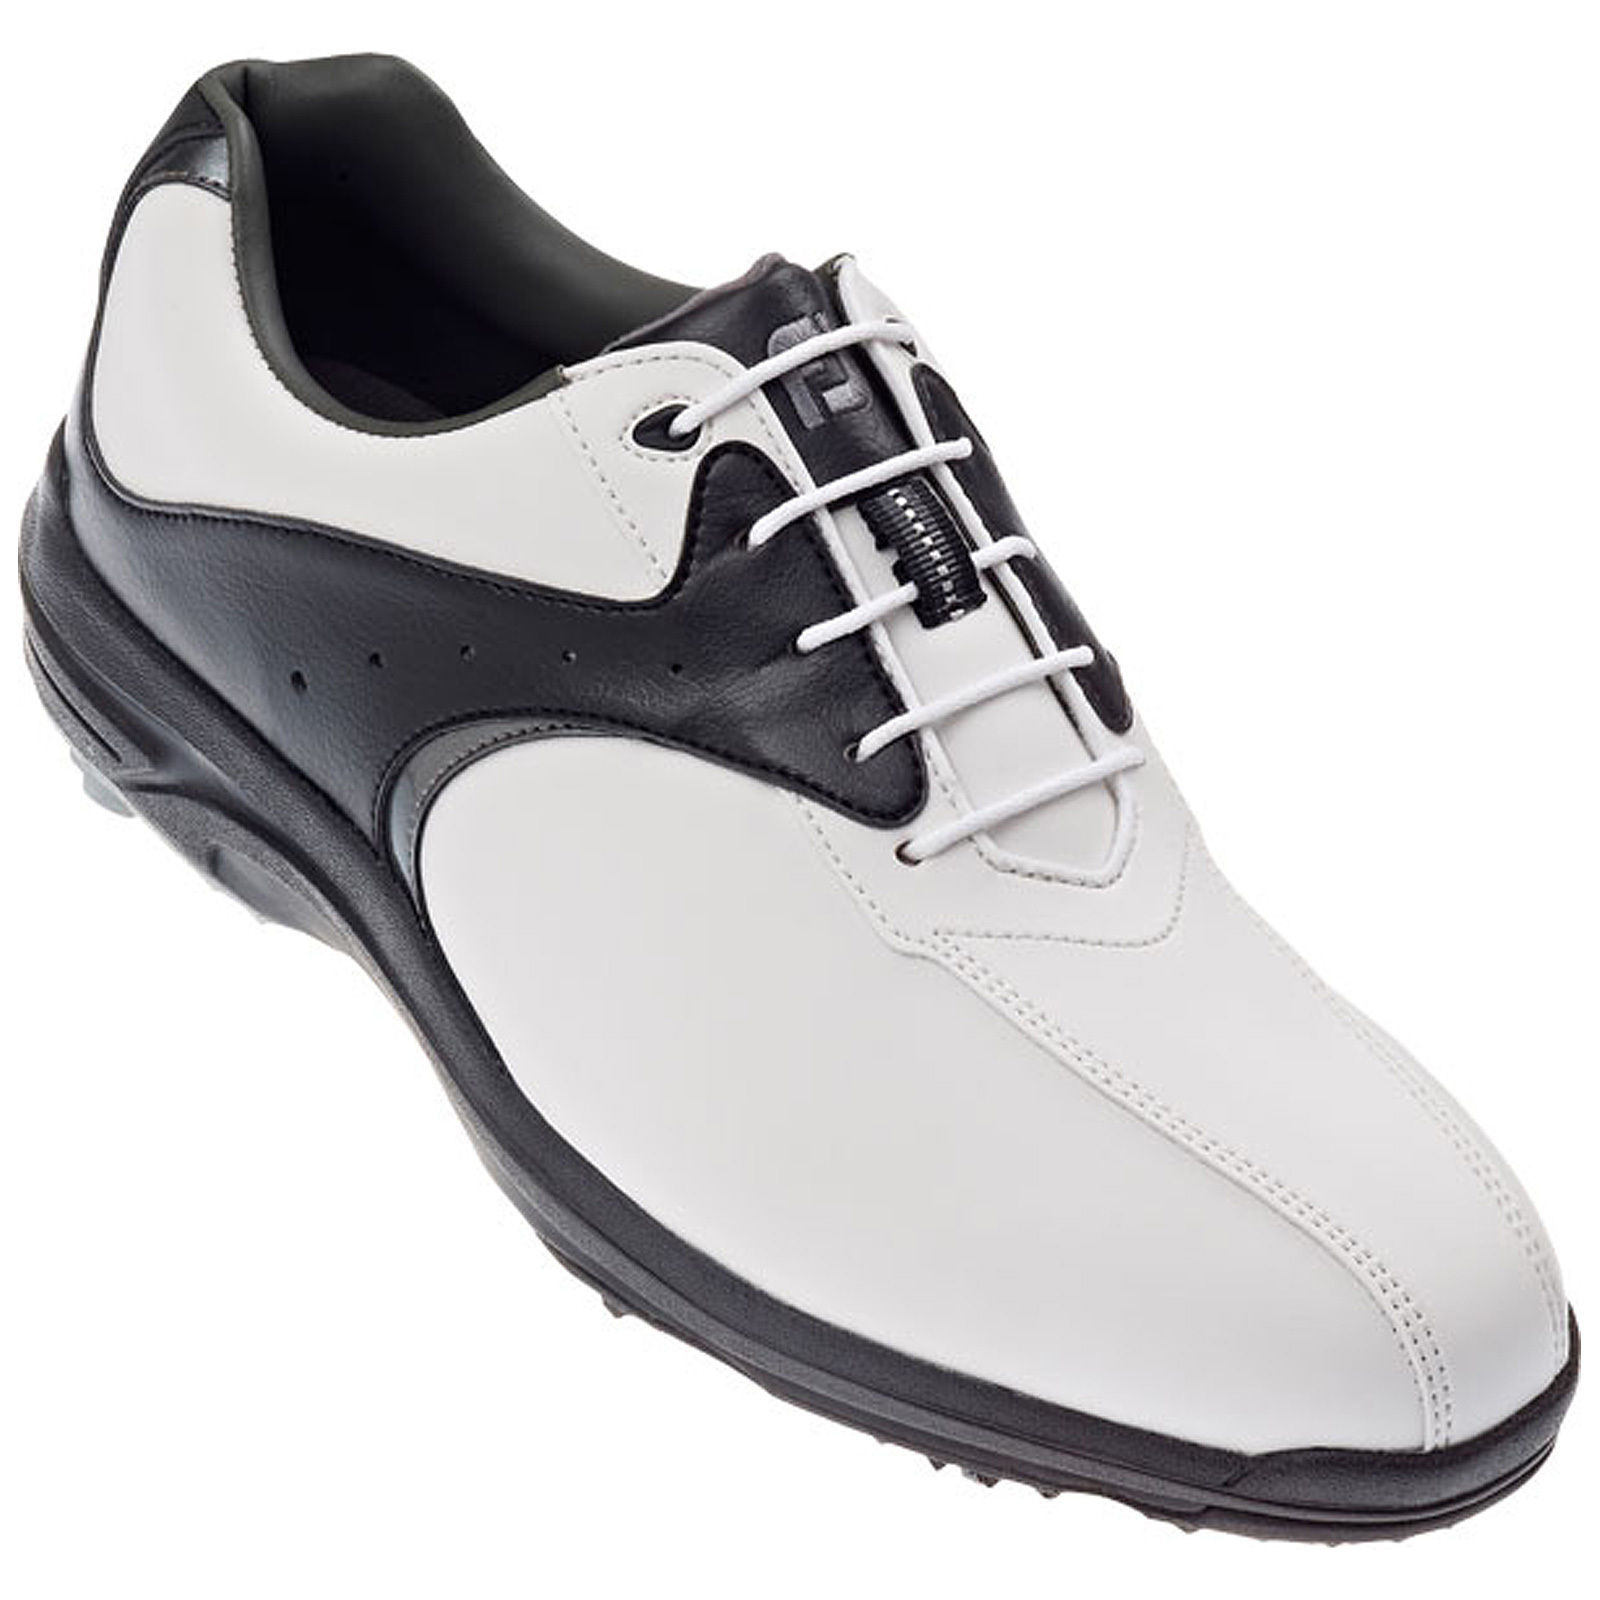 FootJoy Footjoy Greenjoys  golf shoes size 9 UK black eur 43 USA 10 boxed used 